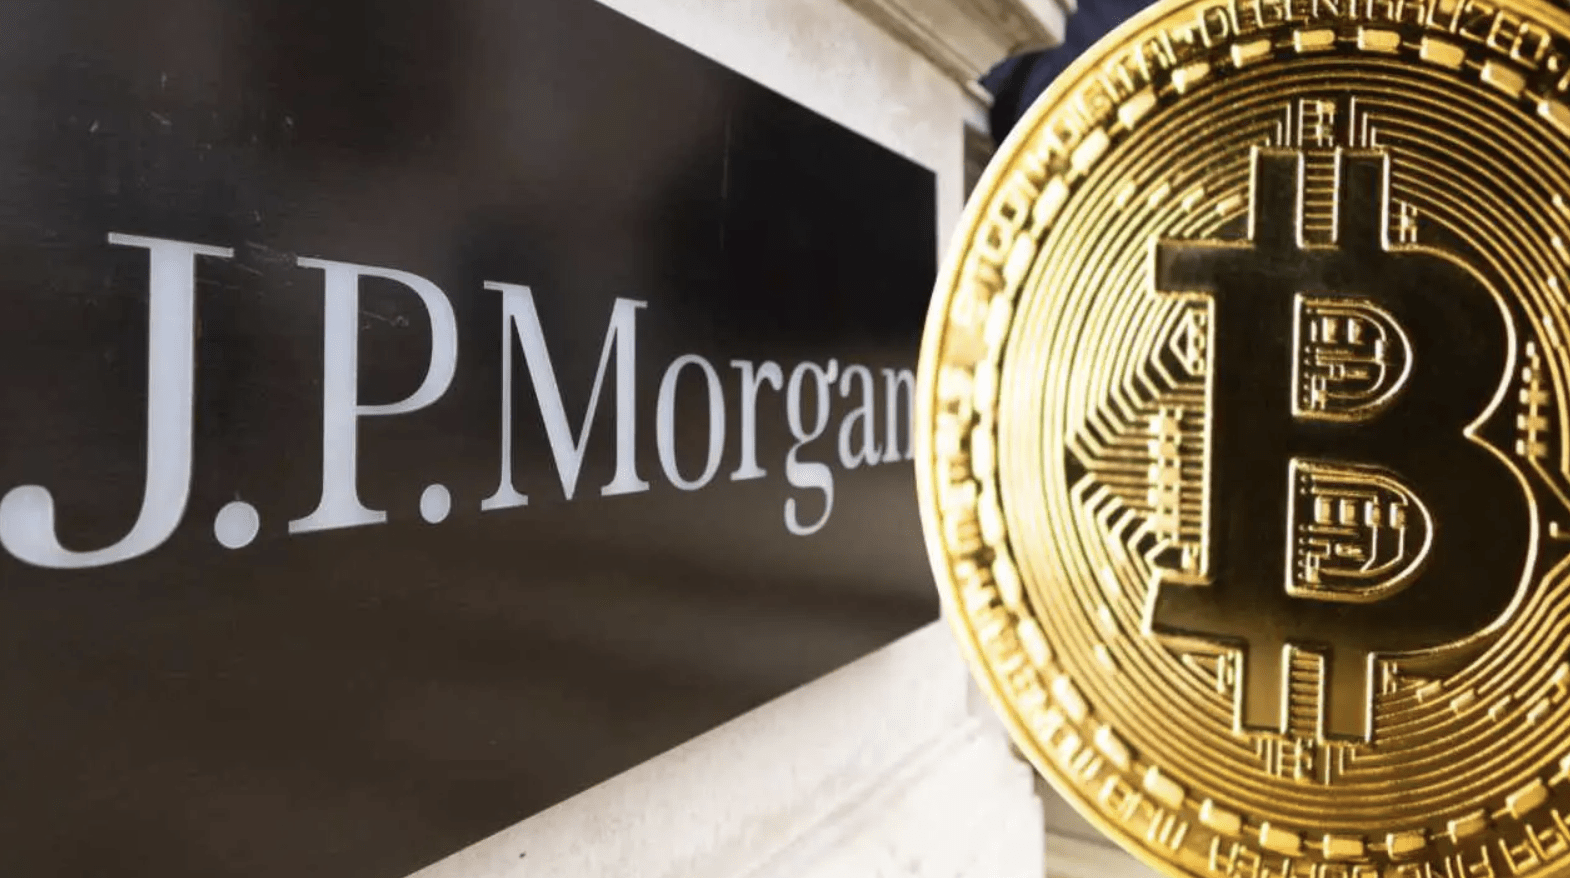 JPMorgan dự đoán tỷ lệ băm Bitcoin sẽ giảm 20% sau Halving